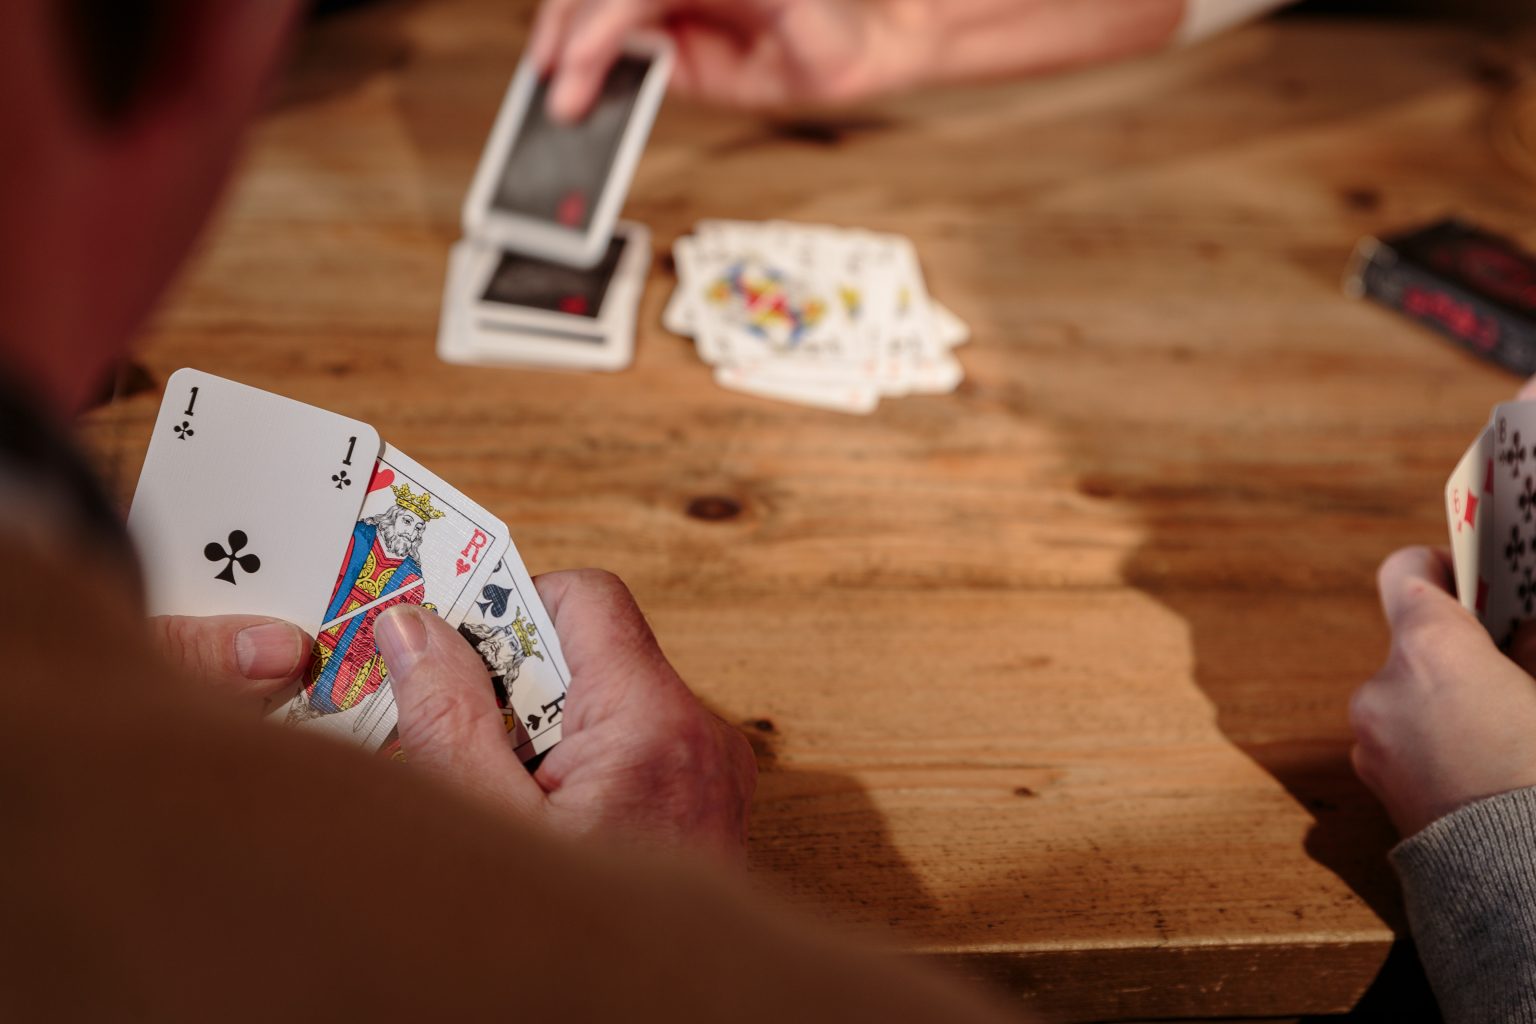 Le chat botté jeu d’association Intrattenimento Giochi e rompicapo Giochi con le carte Cartamundi Giochi con le carte 